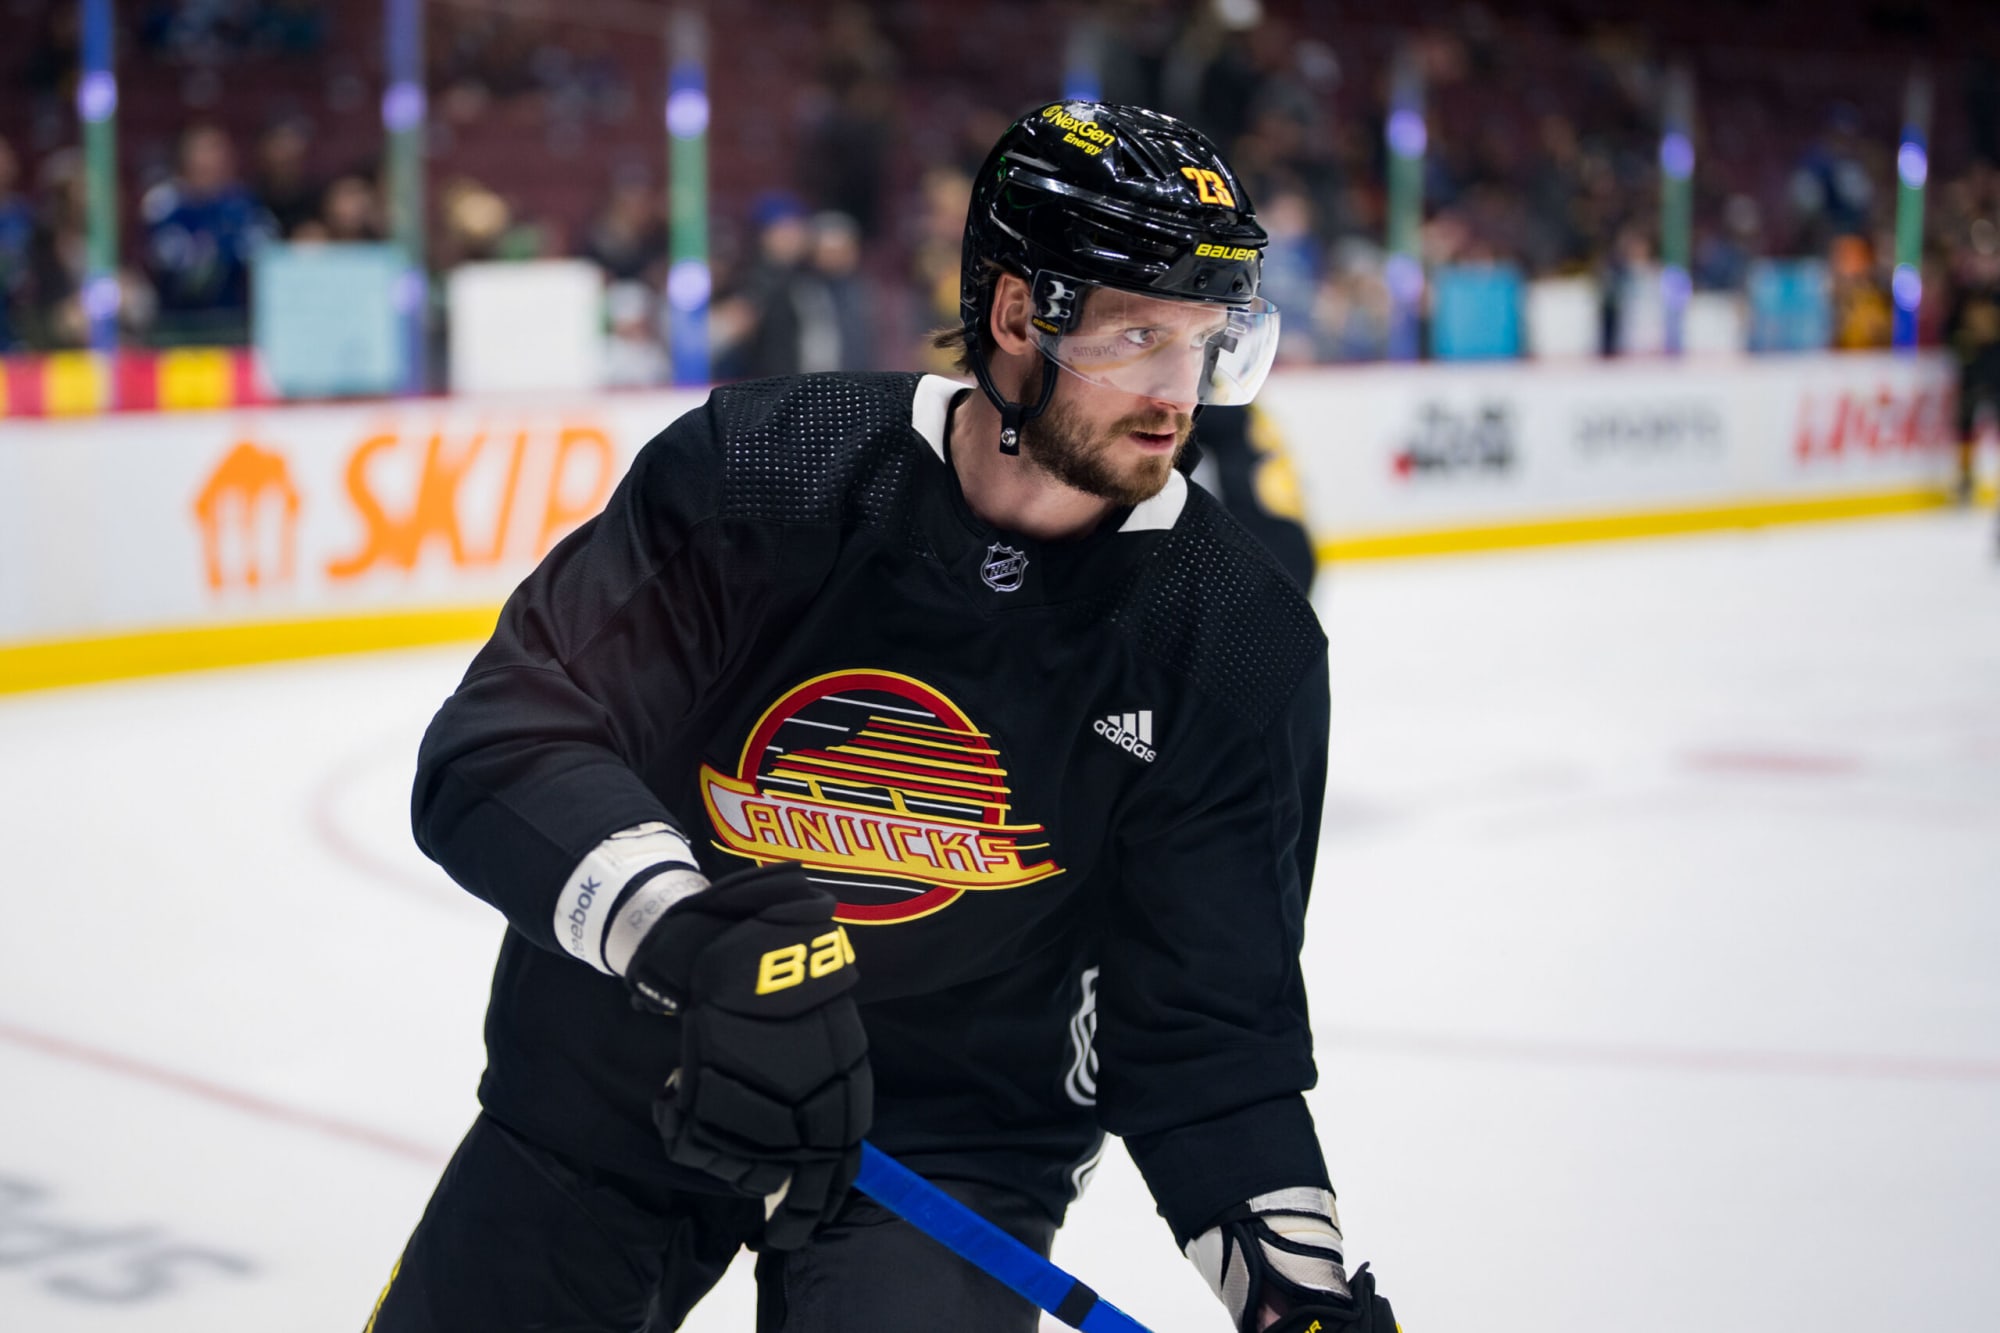 Should the Boston Bruins pursue Oliver Ekman-Larsson?